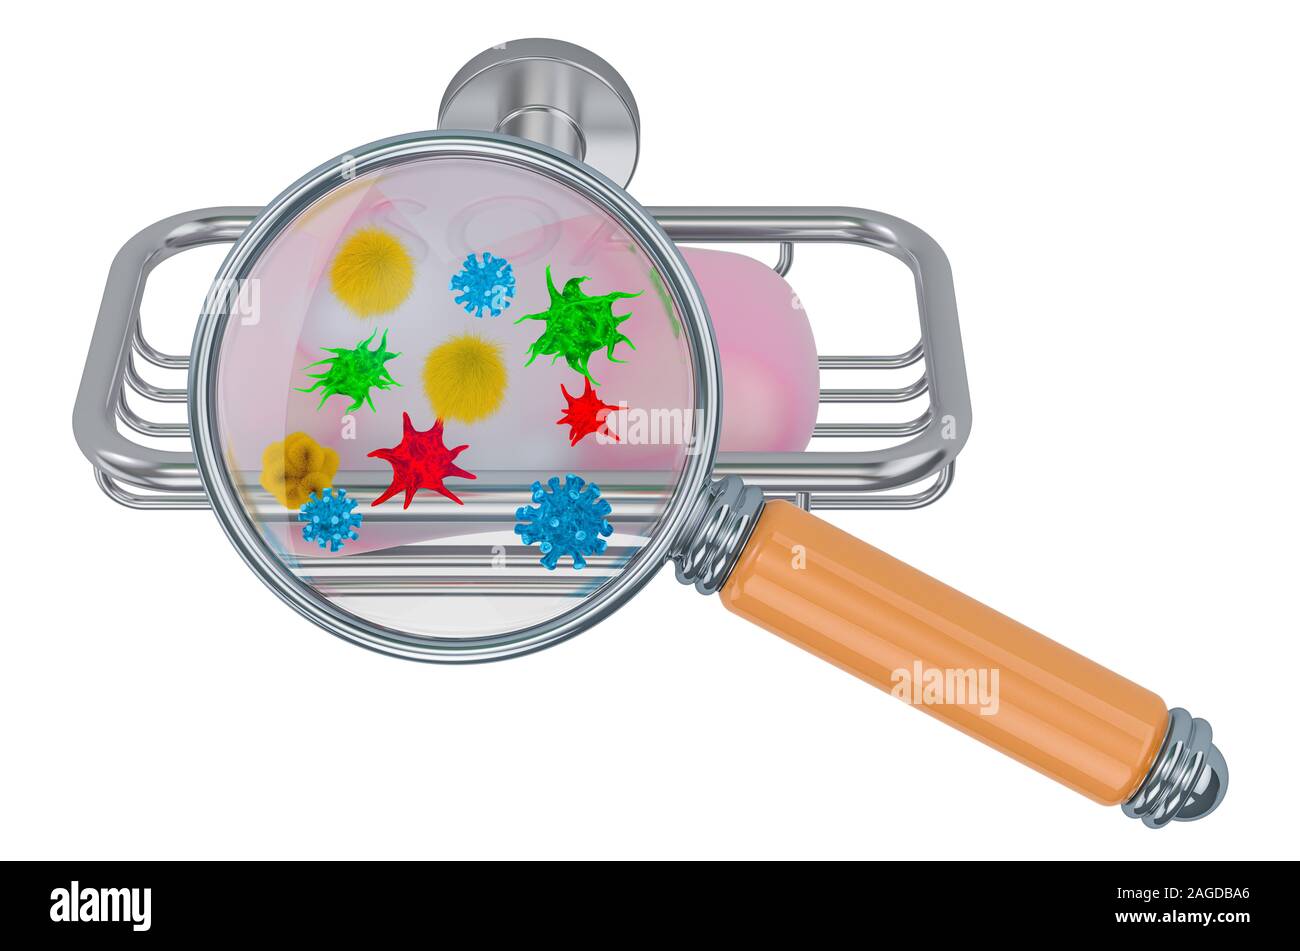 Seife in der Soap-Teller mit Viren und Bakterien unter der Lupe, 3D-Rendering auf weißem Hintergrund Stockfoto